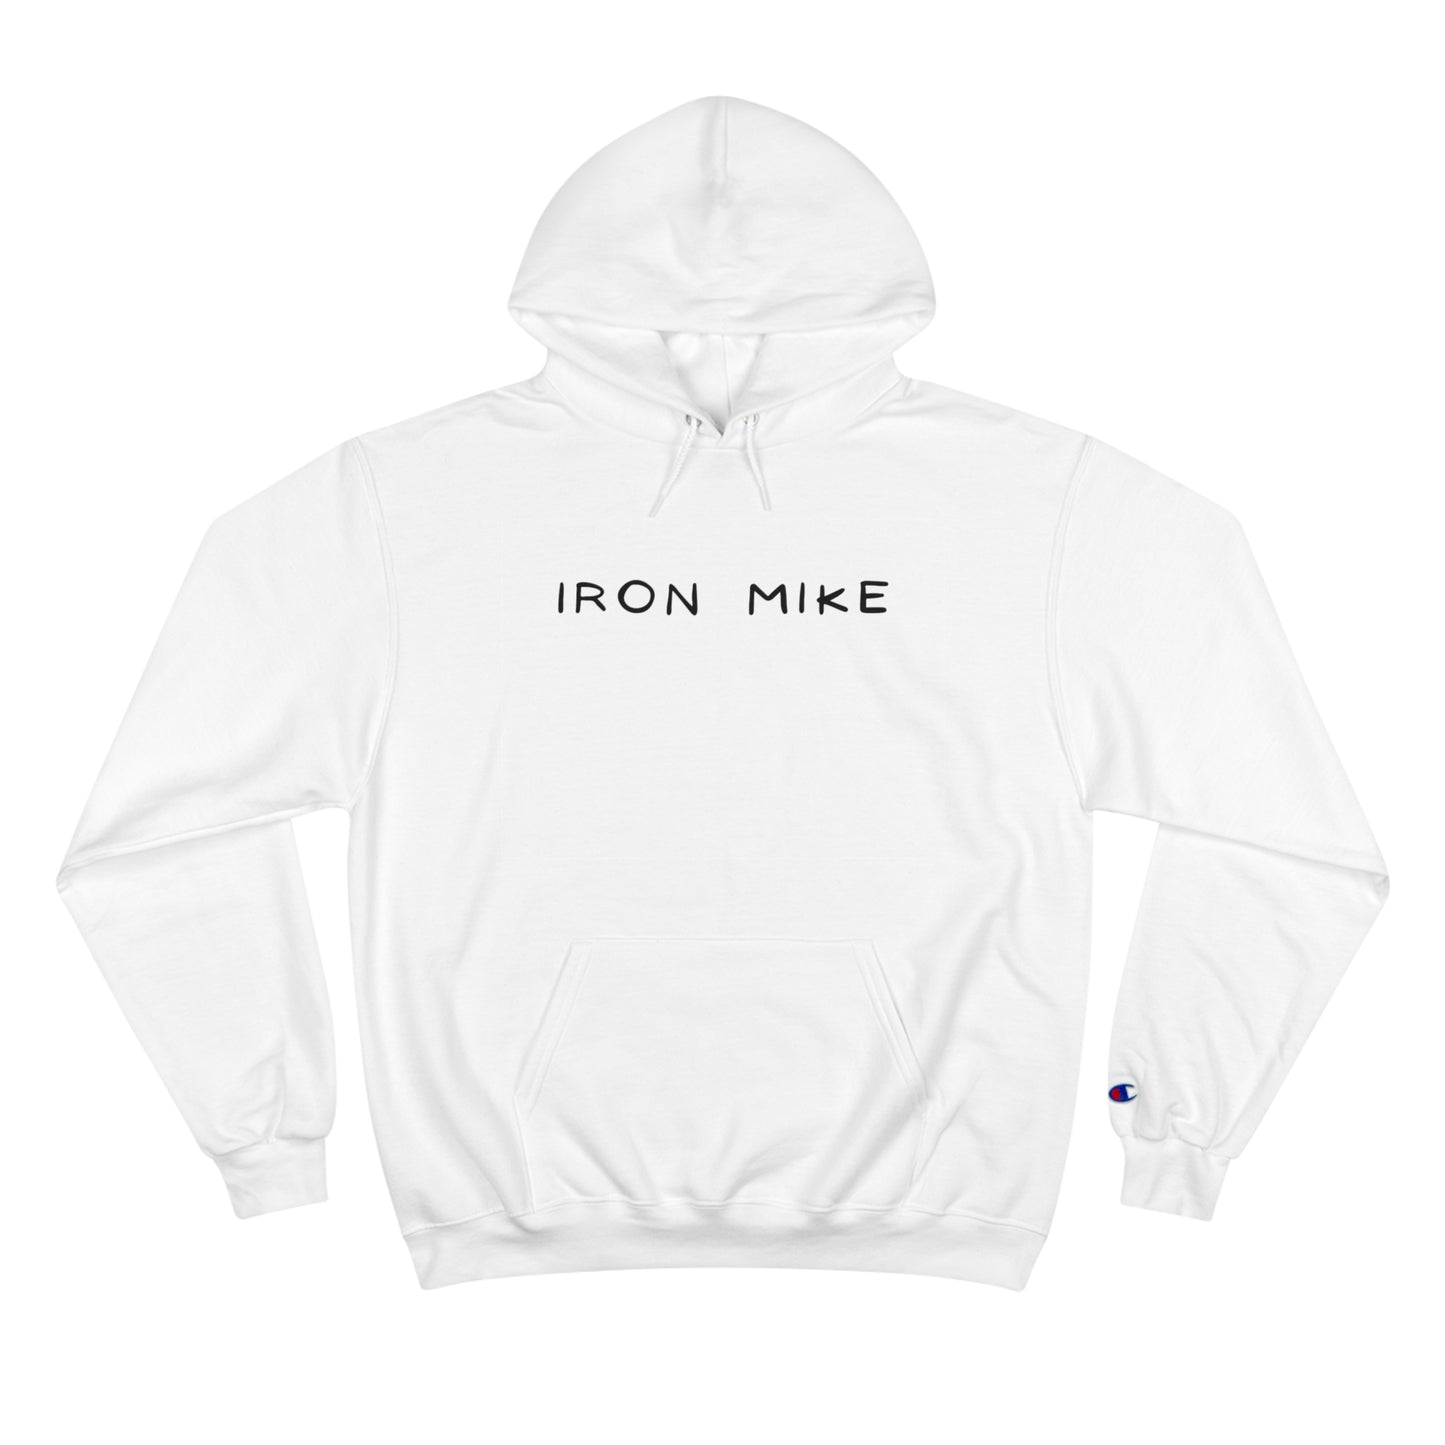 Iron Mike Champion Eco Hoodie - Sustainable, Warm Fleece with Iconic Branding